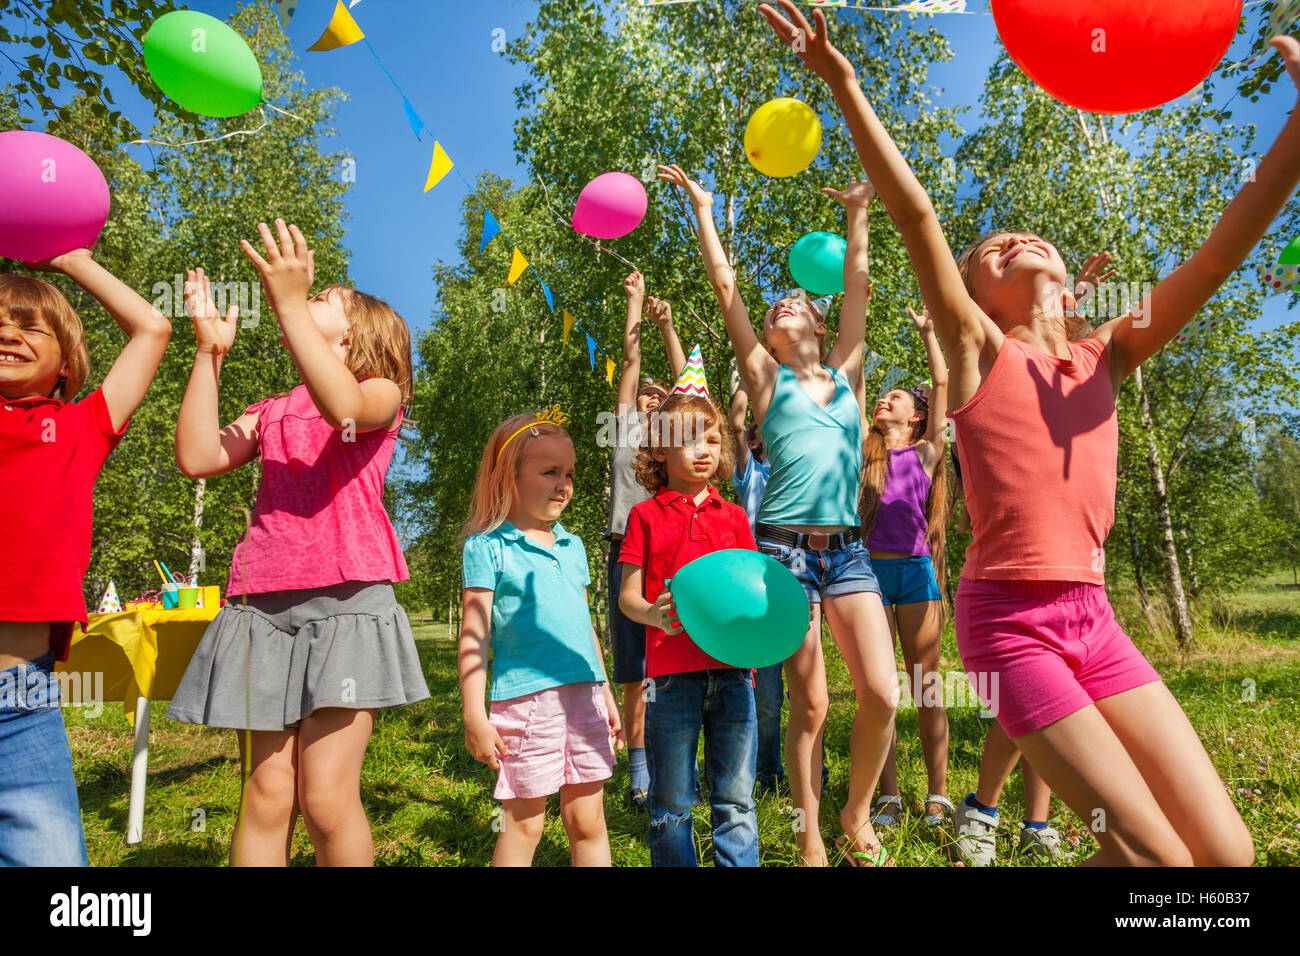 Heureux les enfants jouant et attraper des ballons colorés Banque D'Images